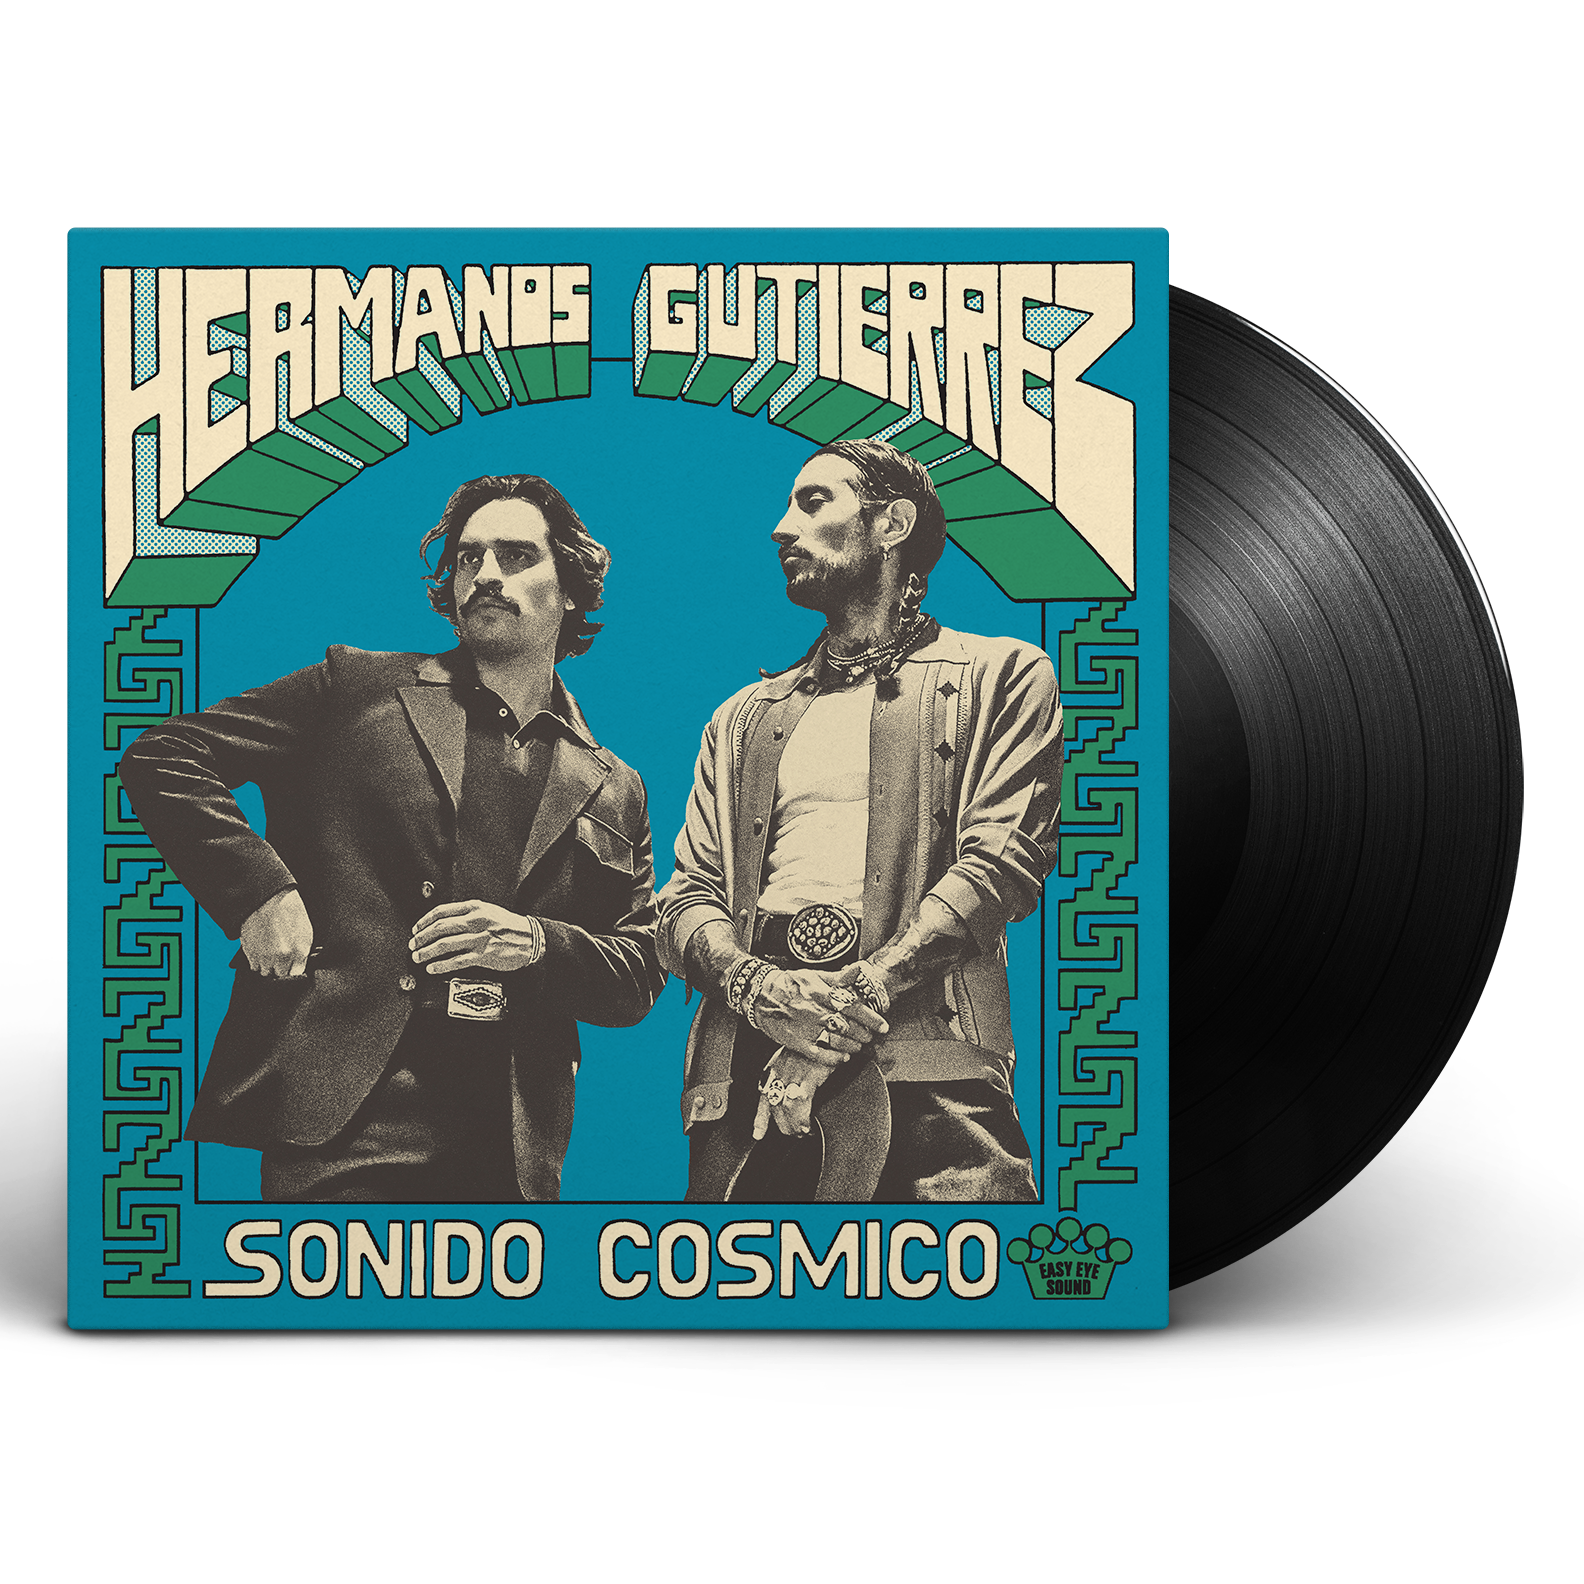 Hermanos Gutiérrez - Sonido Cósmico: Vinyl LP